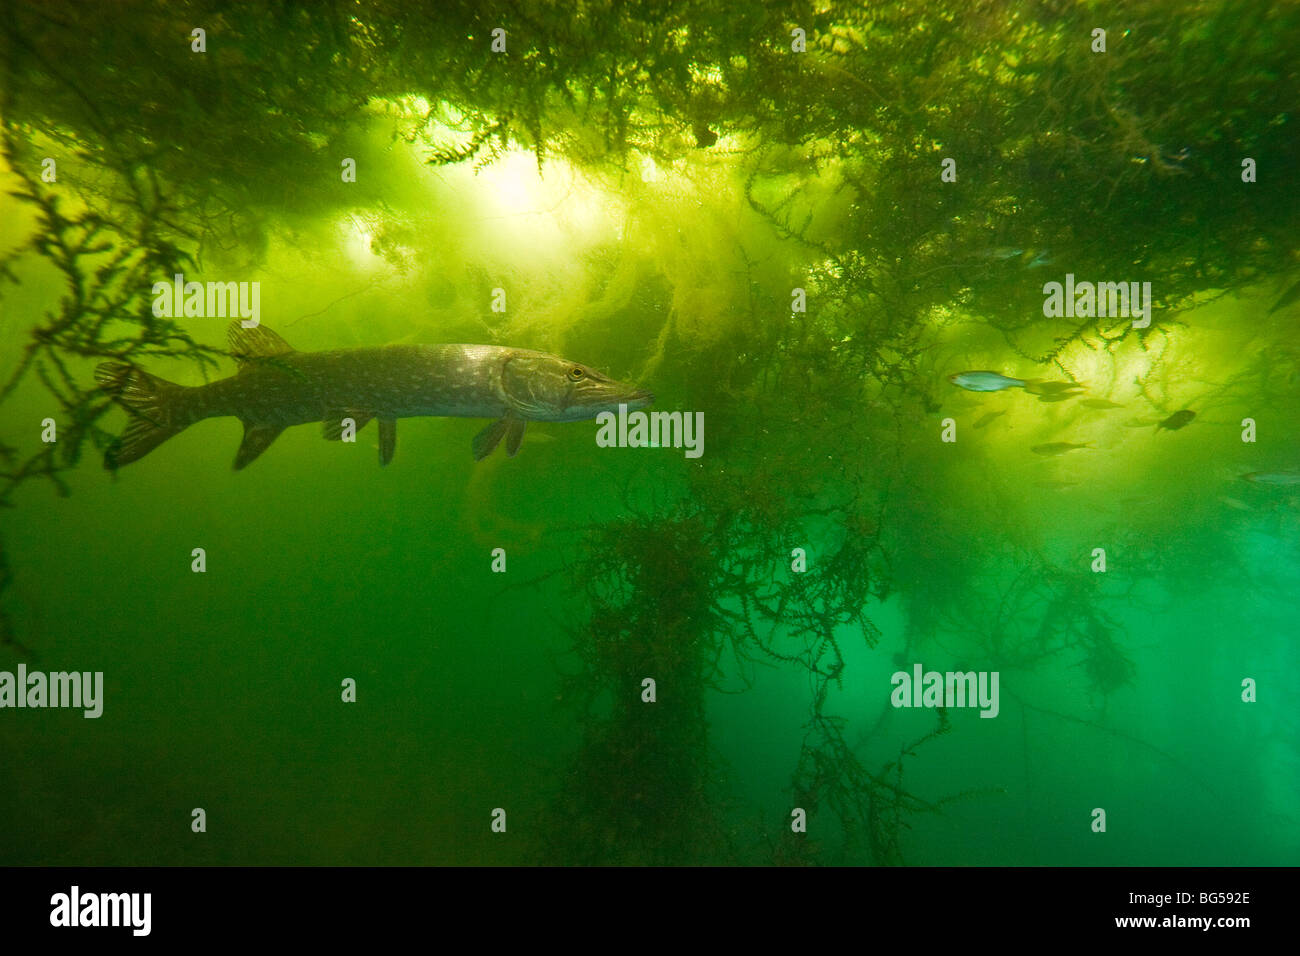 Un luccio (Esox lucius) in un ambiente naturale. La superficie di acqua tende verso una copertura di alghe filamentose. Foto Stock